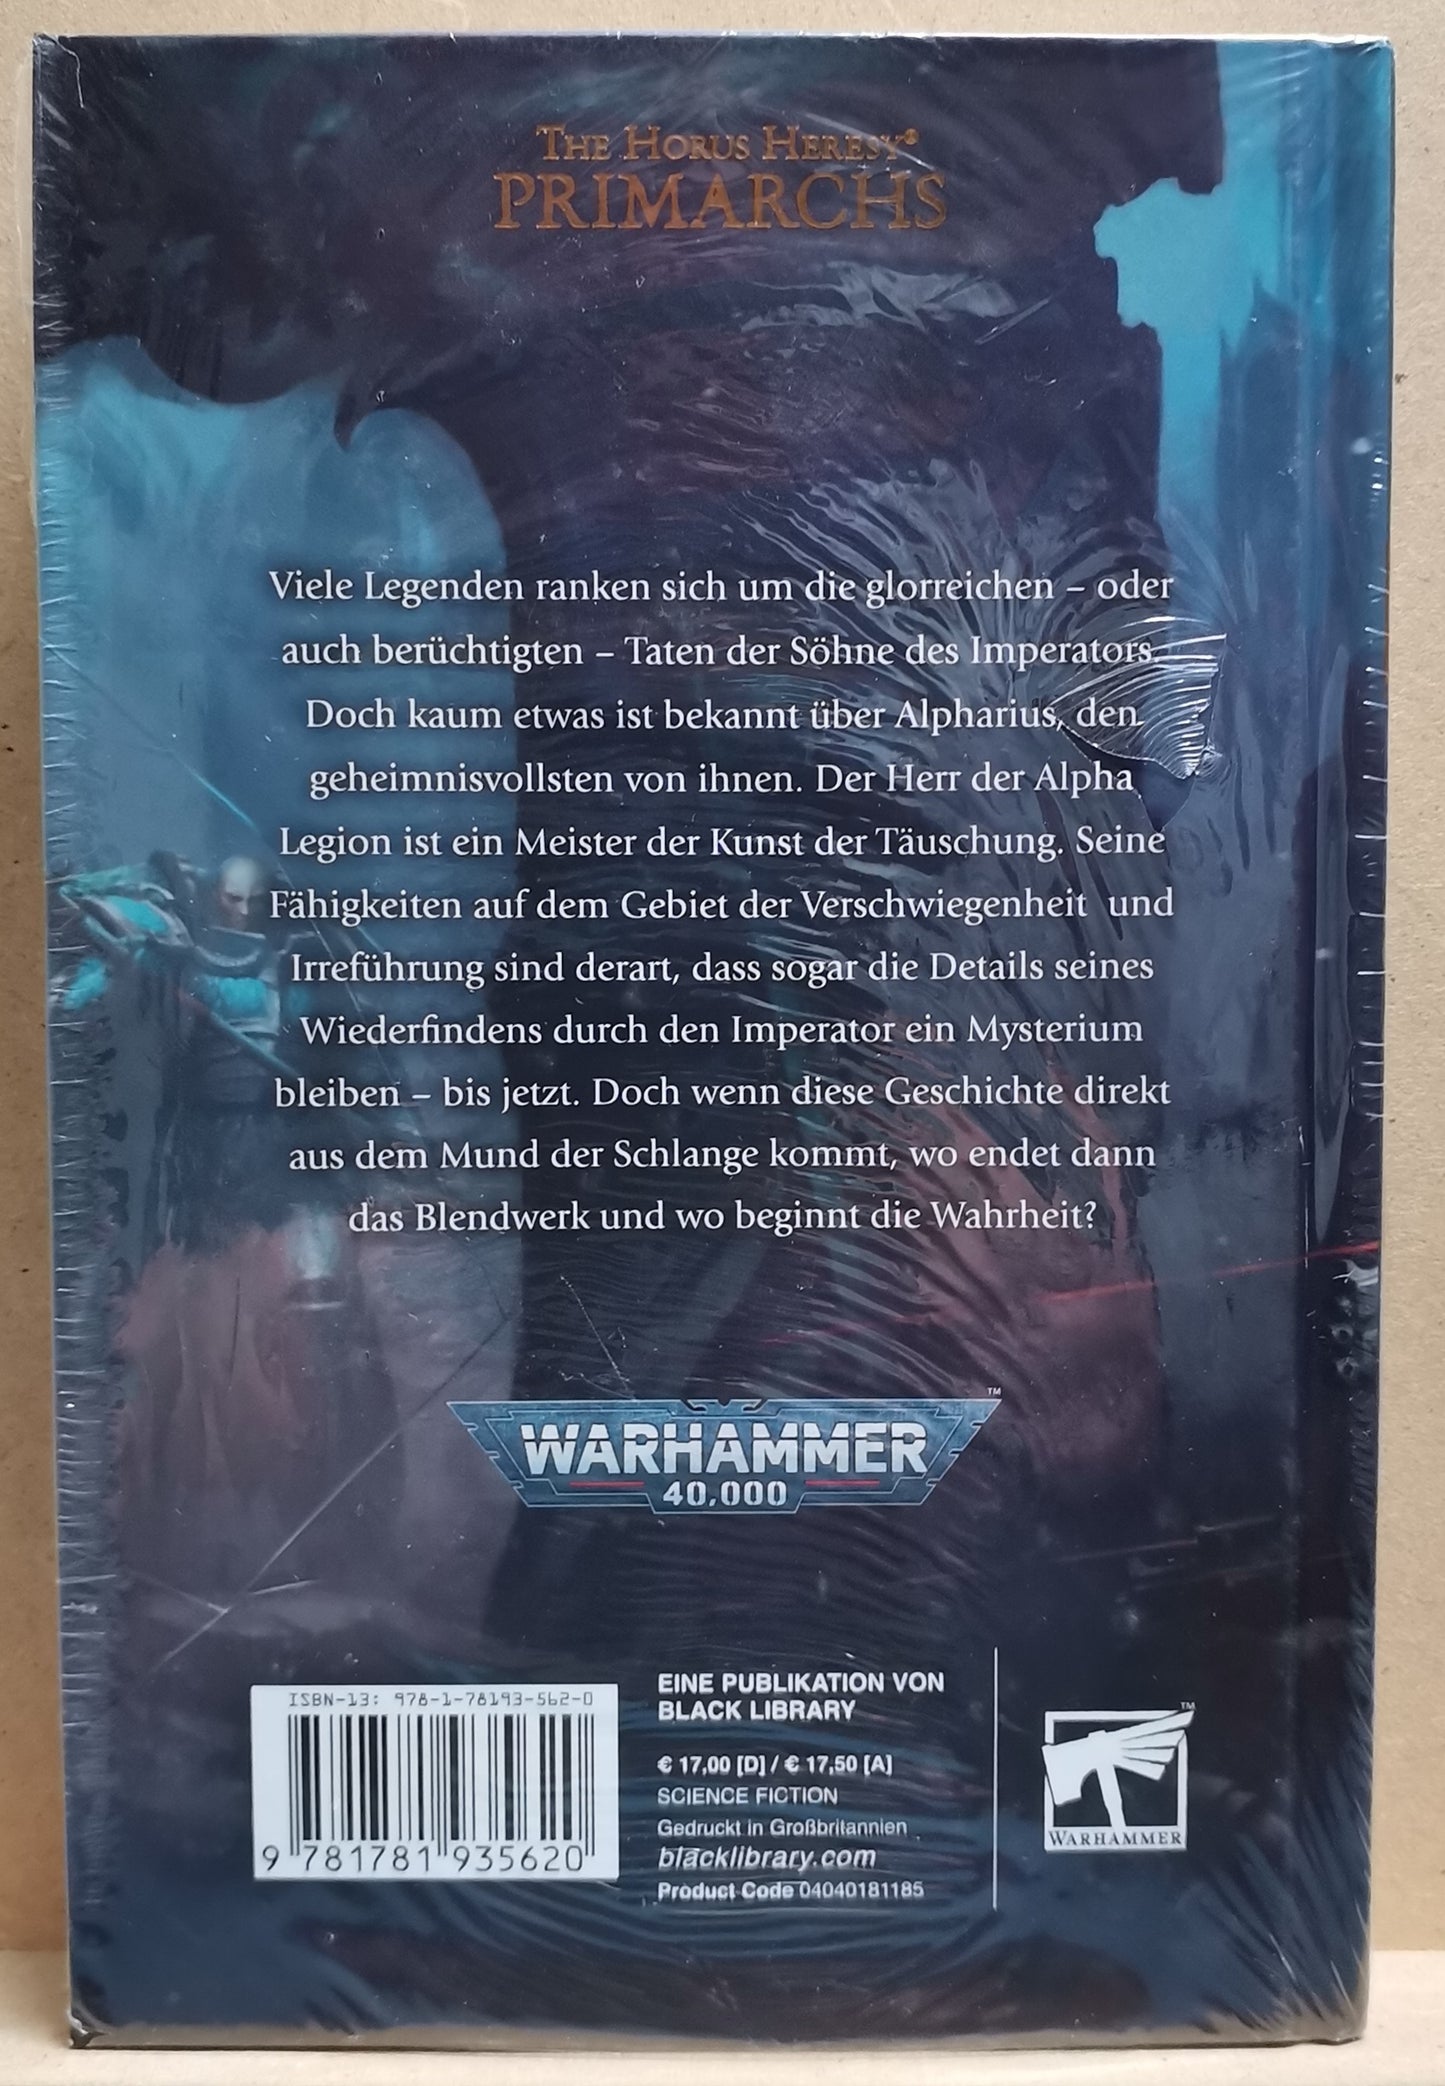 Warhammer 40K - The Horus Heresy Primarchs: Alpharius